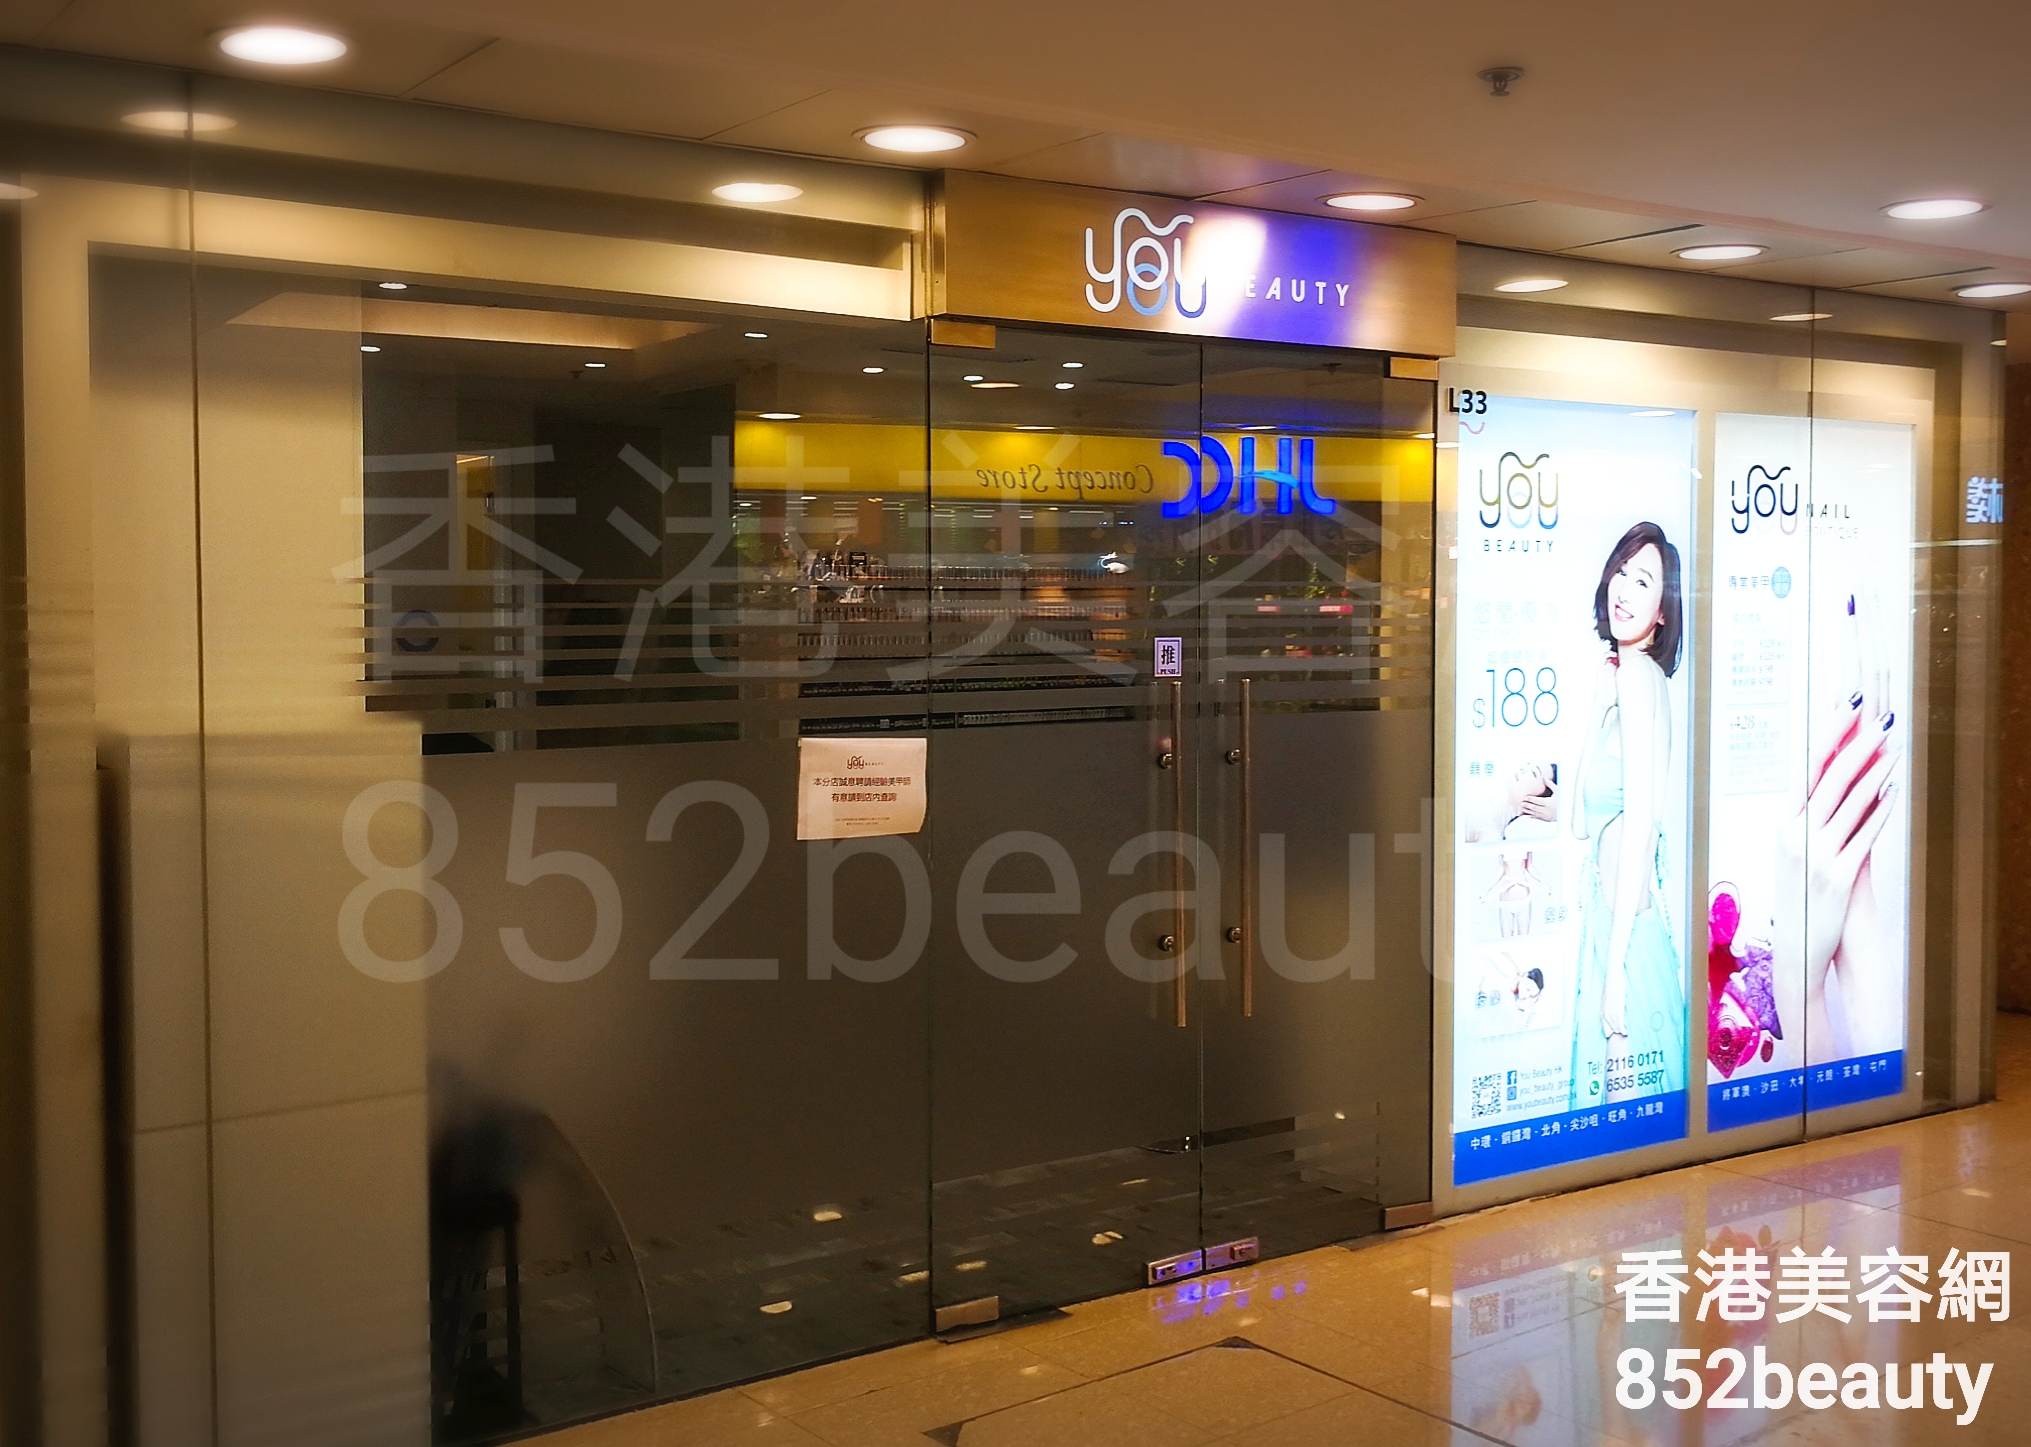 香港美容網 Hong Kong Beauty Salon 美容院 / 美容師: YOU BEAUTY (北角店)